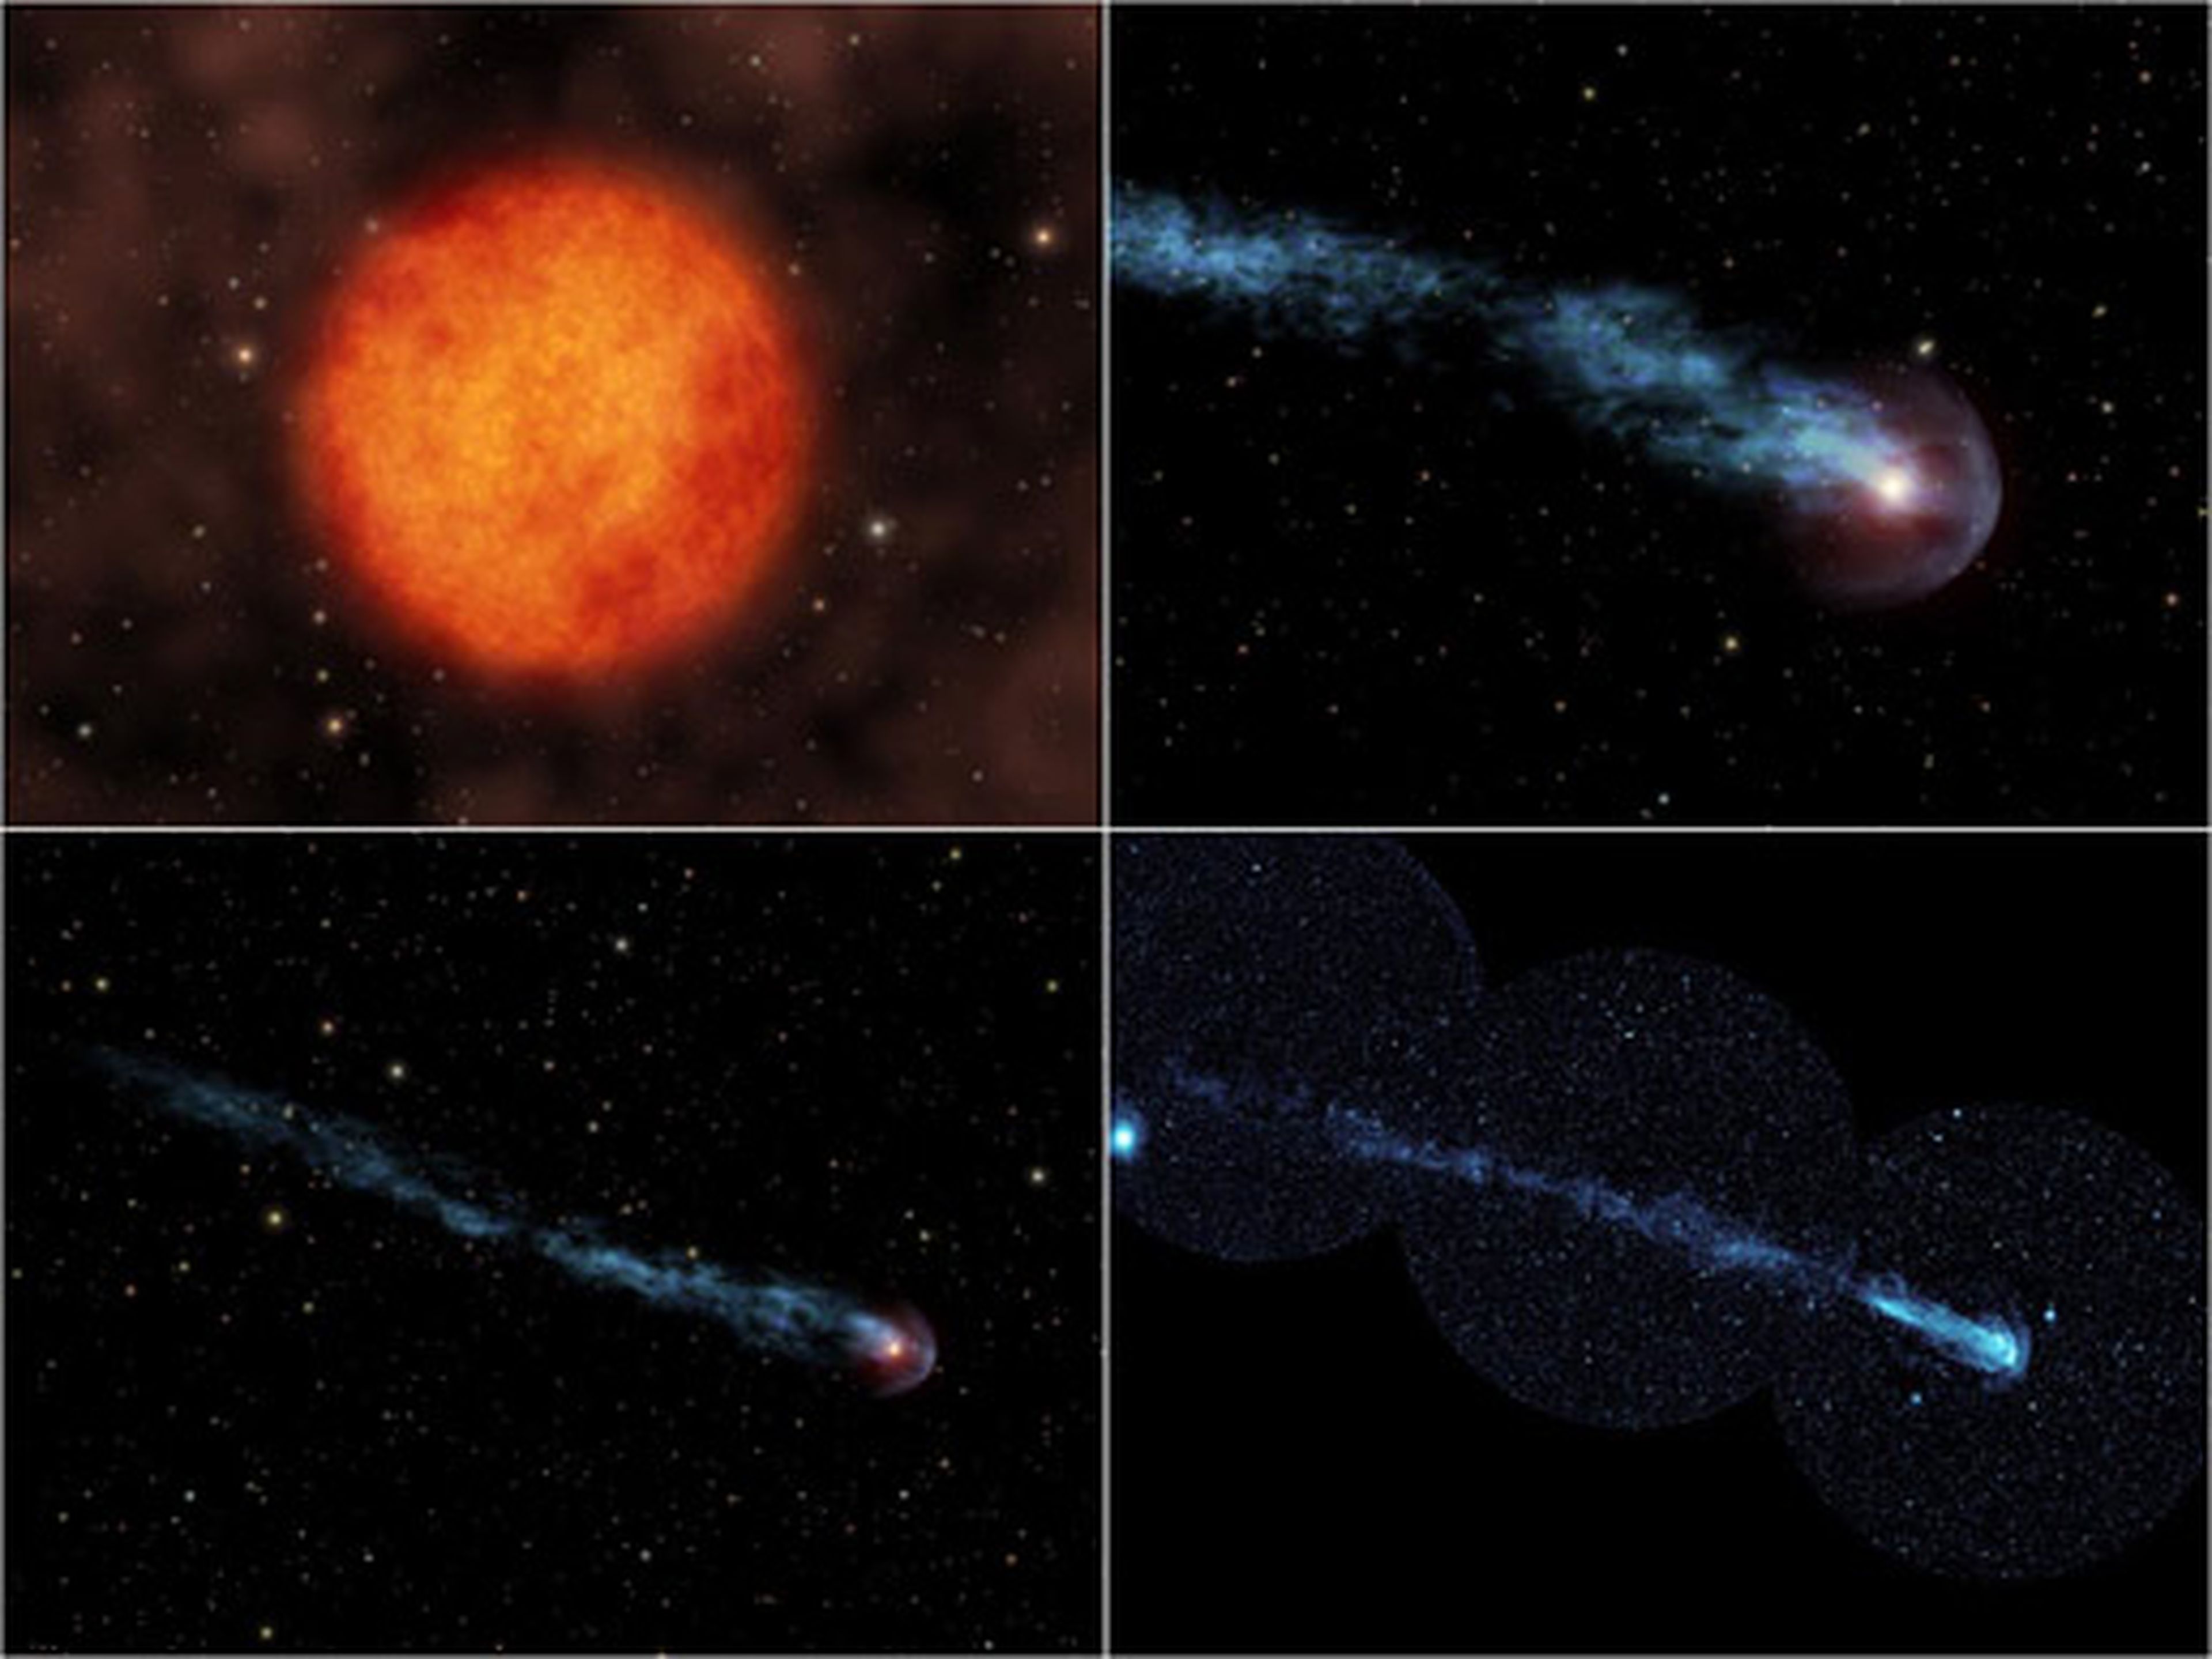 Ilustración de la estrella variable Mira Ceti, junto al material expulsado con su movimiento.